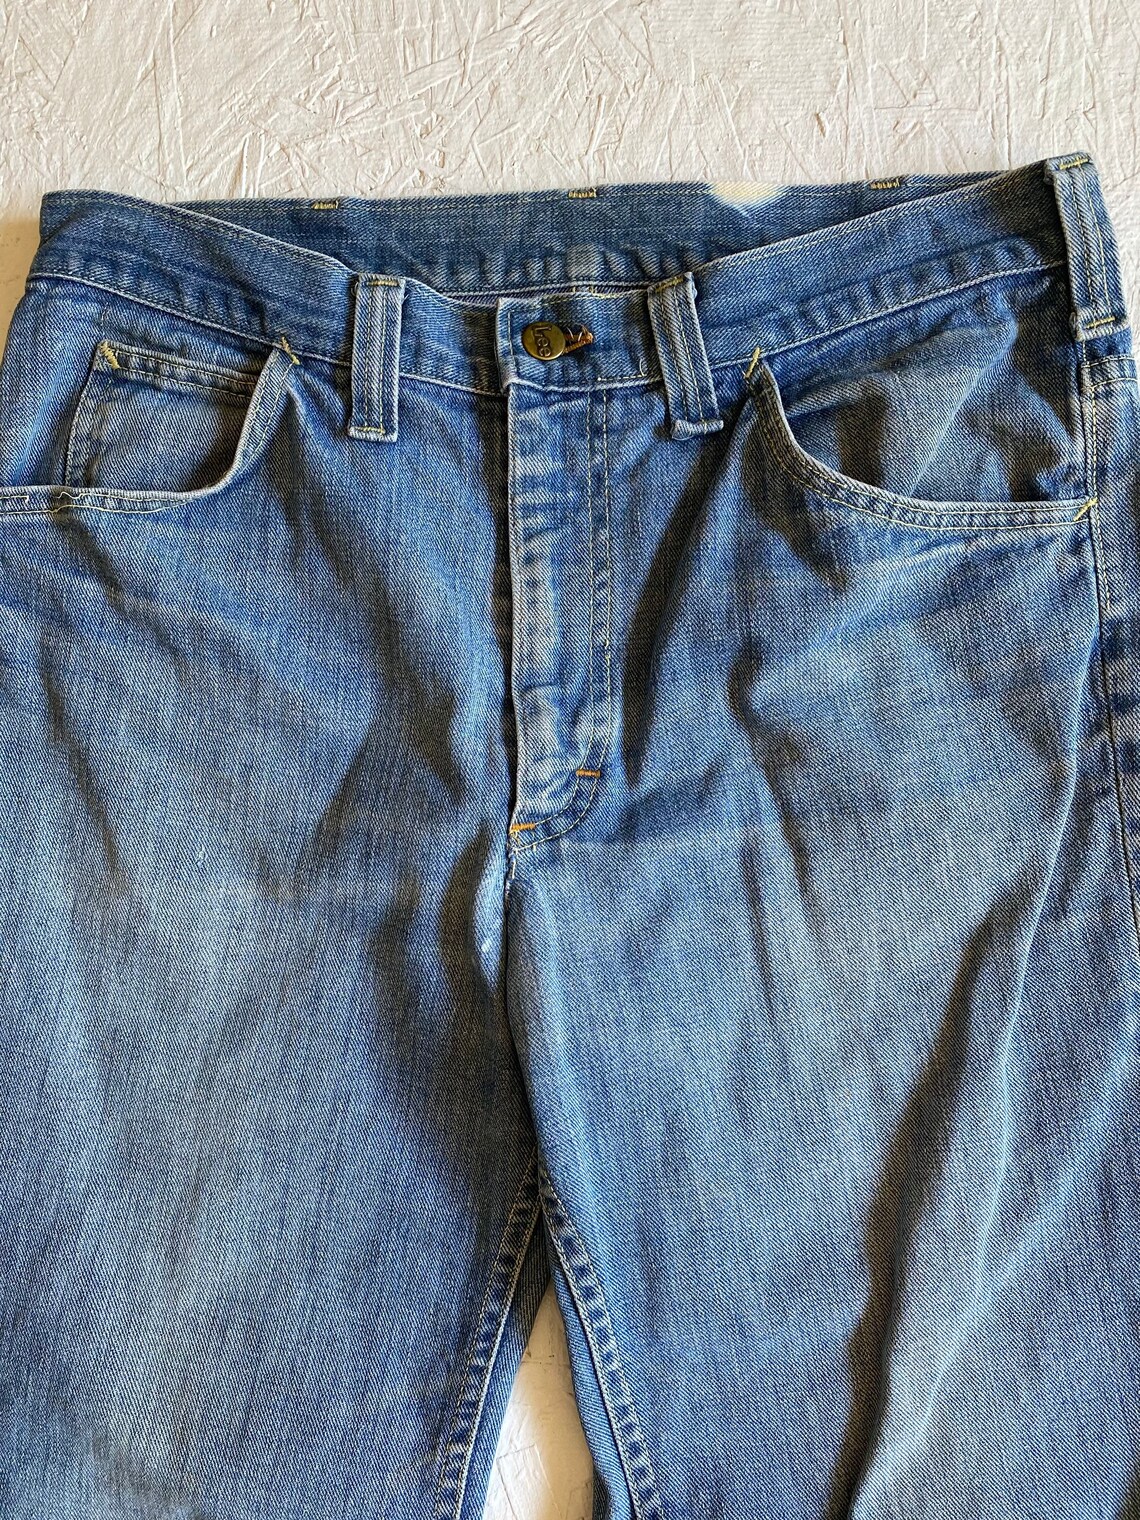 Vintage 1960s Lee Bell Bottom Jeans Distressed Unisex 5 Pocket | Etsy